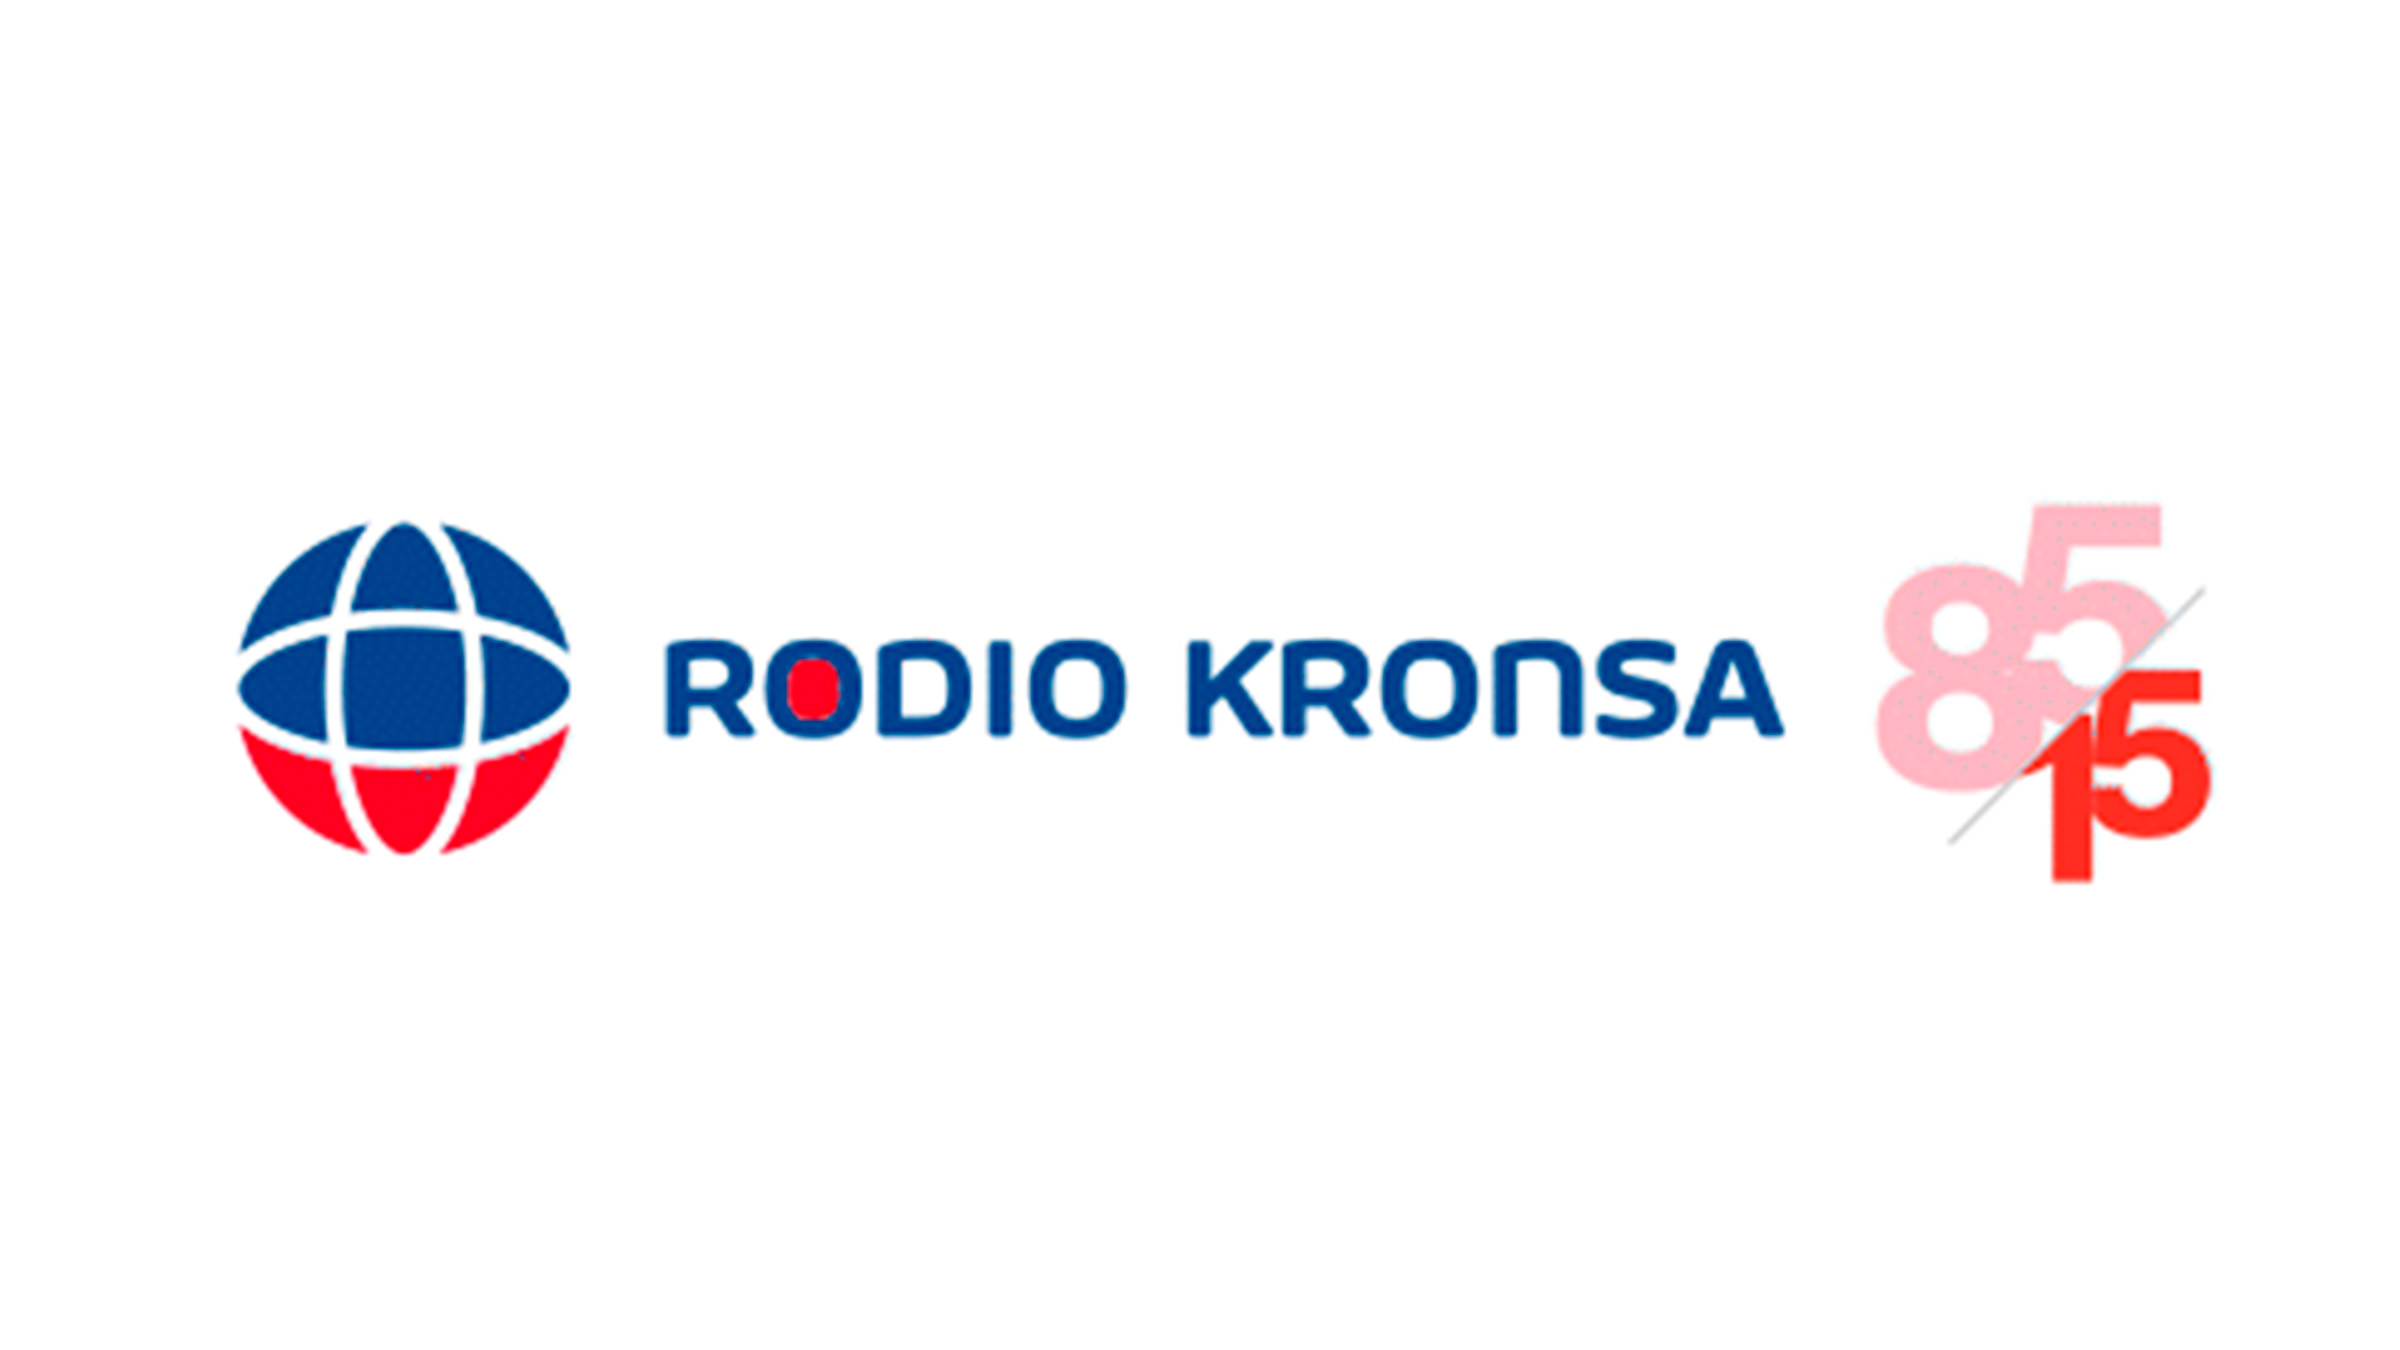 Rodio-Kronsa-logo-celebración-85-más-15-años